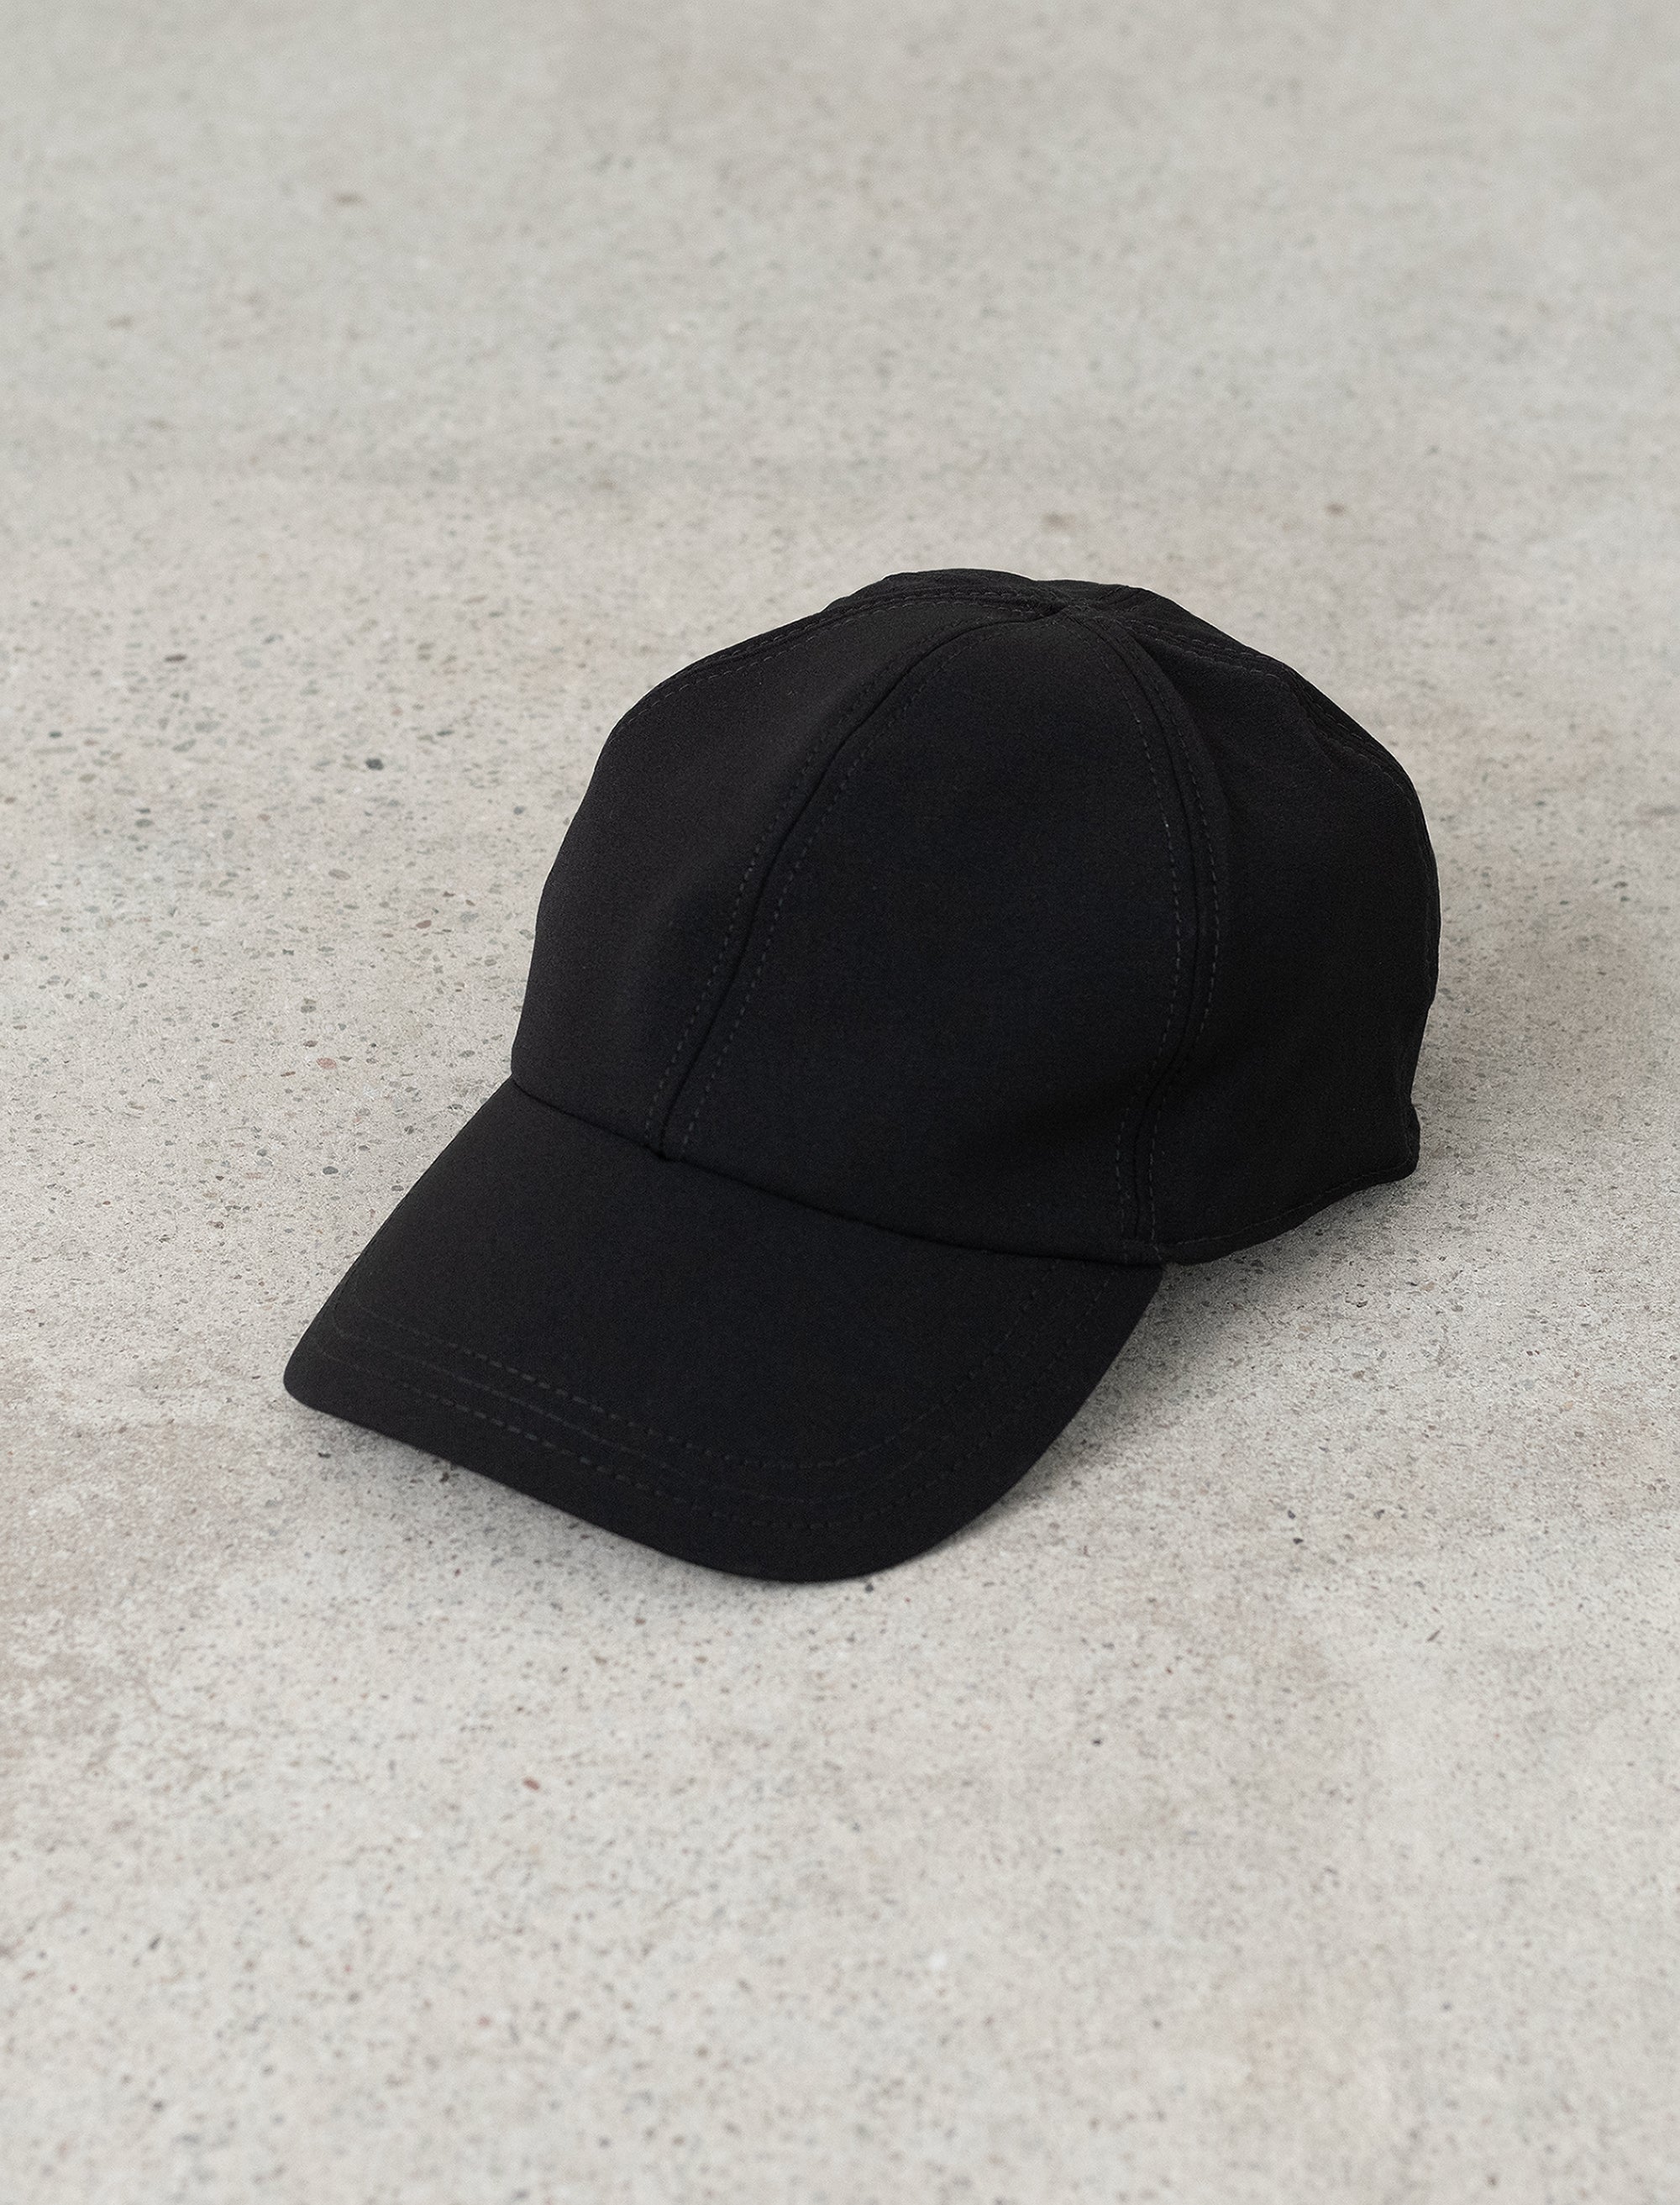 IBQ Stock Cap (Black)